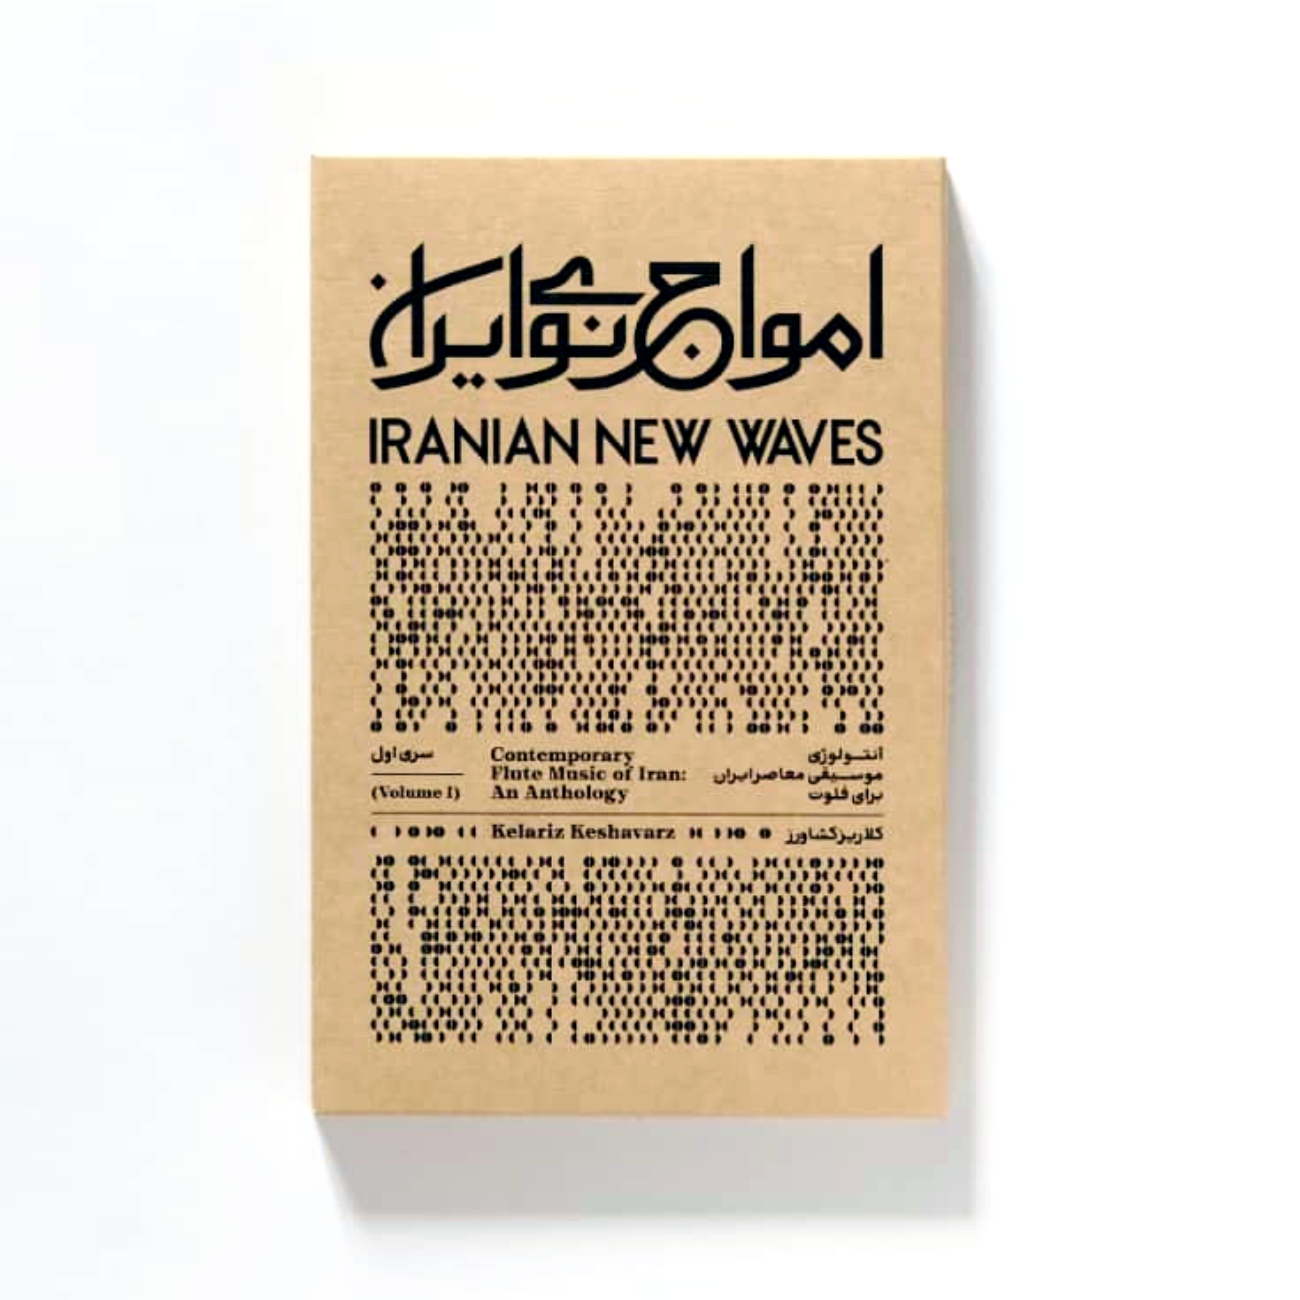 آلبوم موسیقی امواج نوی ایران اثر کلاریس کشاورز